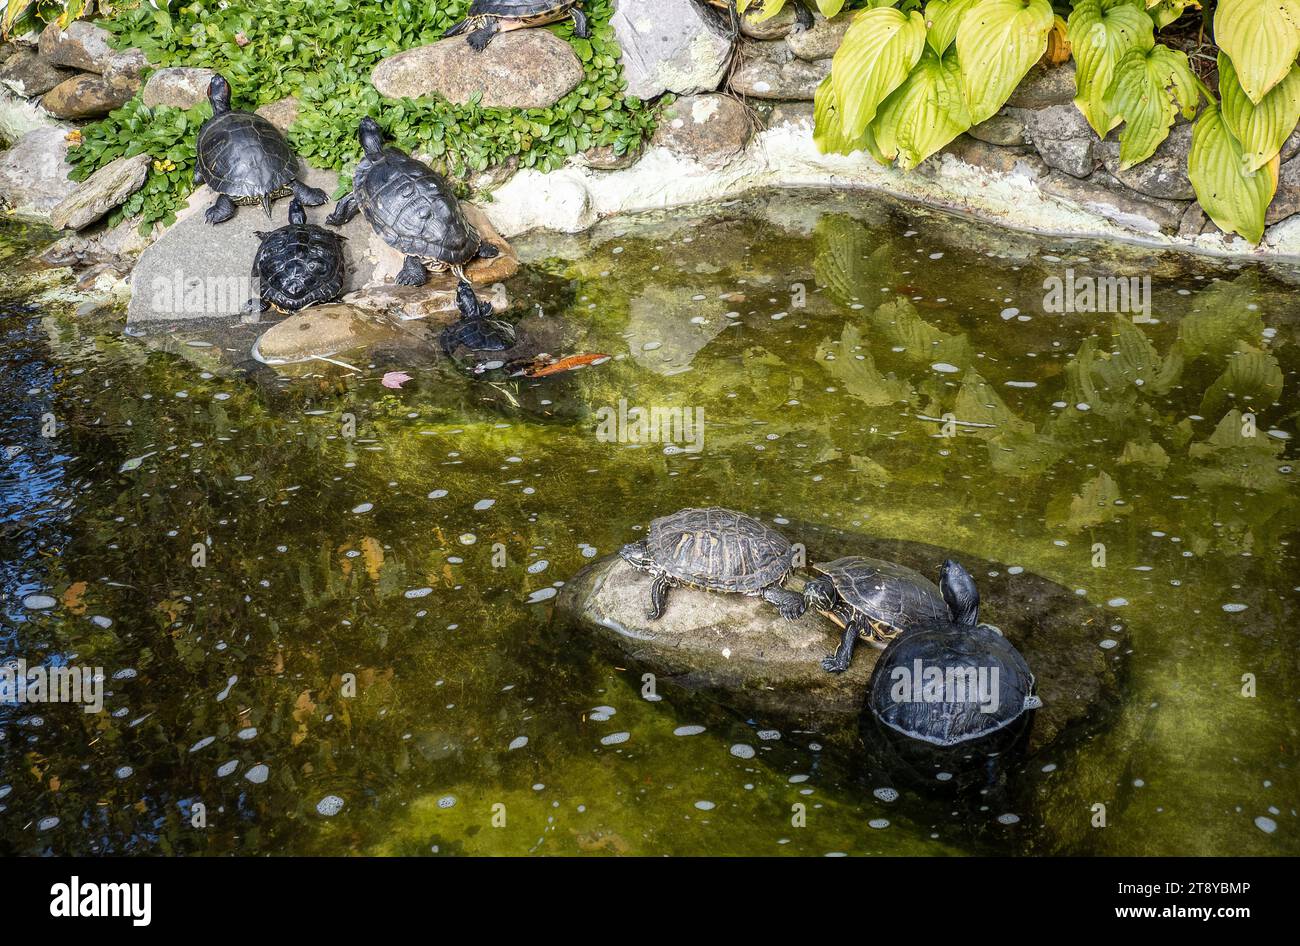 Tortugas de estanque en Blowing Rock, Boone, Carolina del Norte, EE.UU Foto de stock